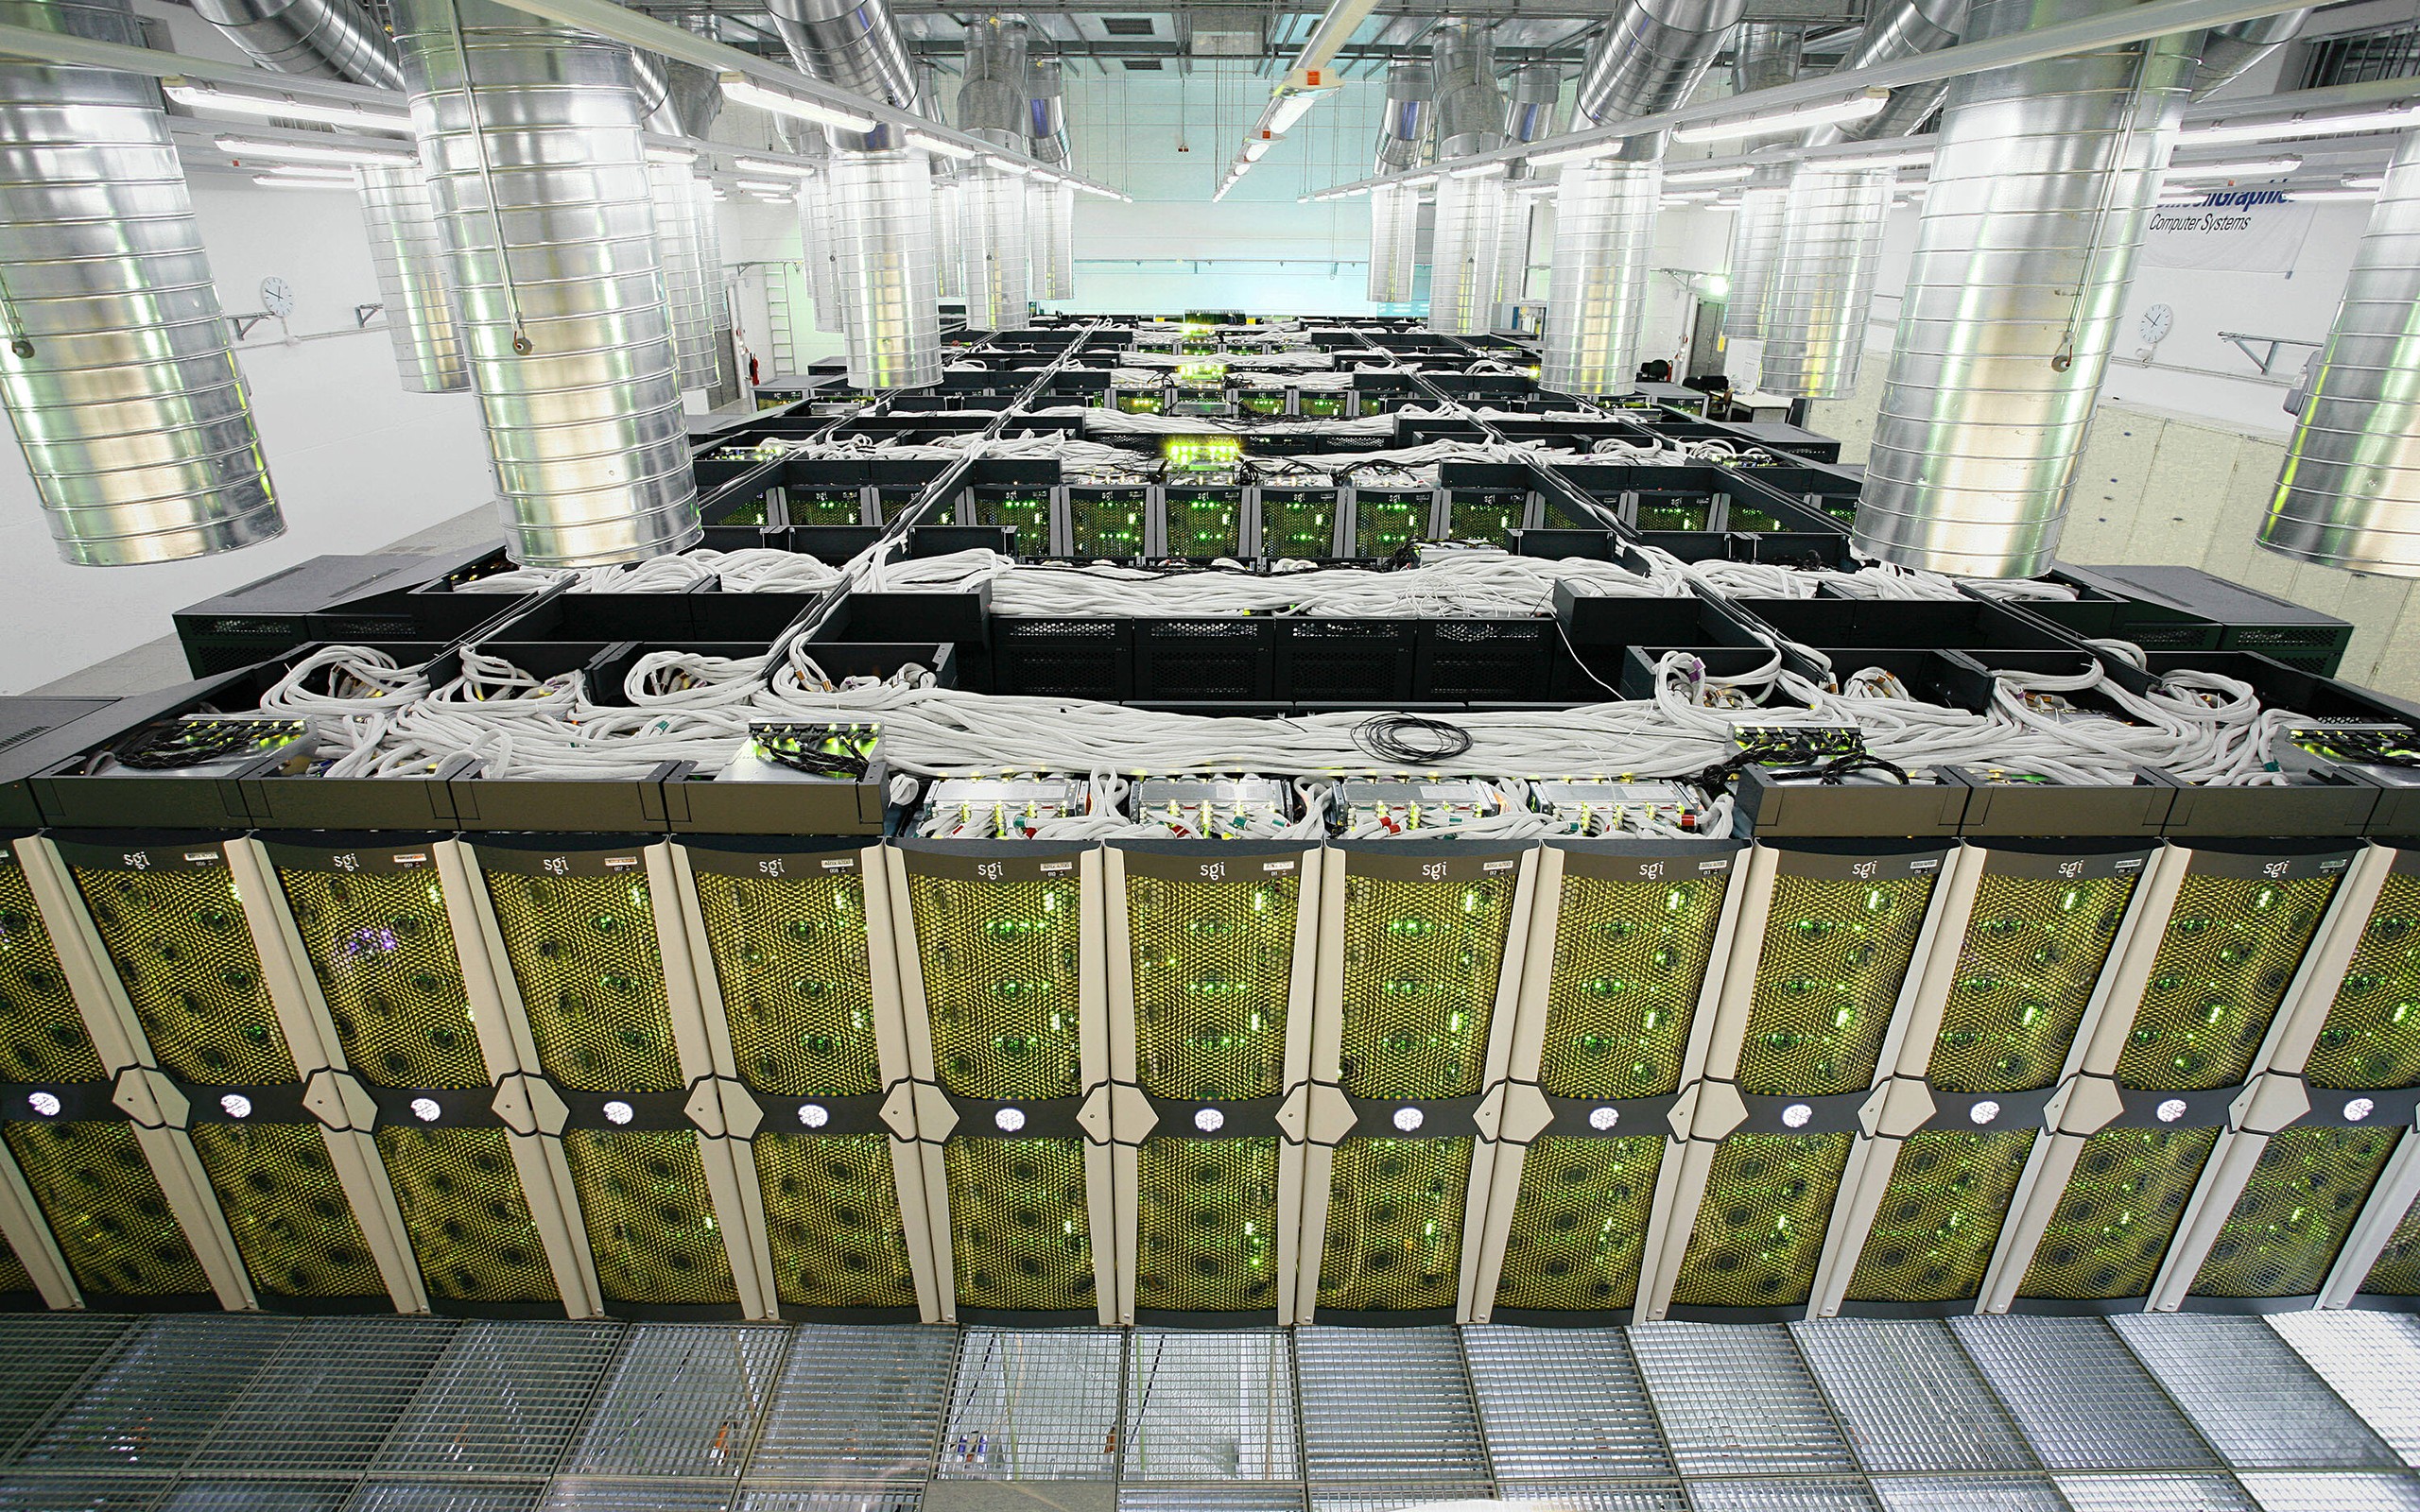 General 2560x1600 server computer network technology data center